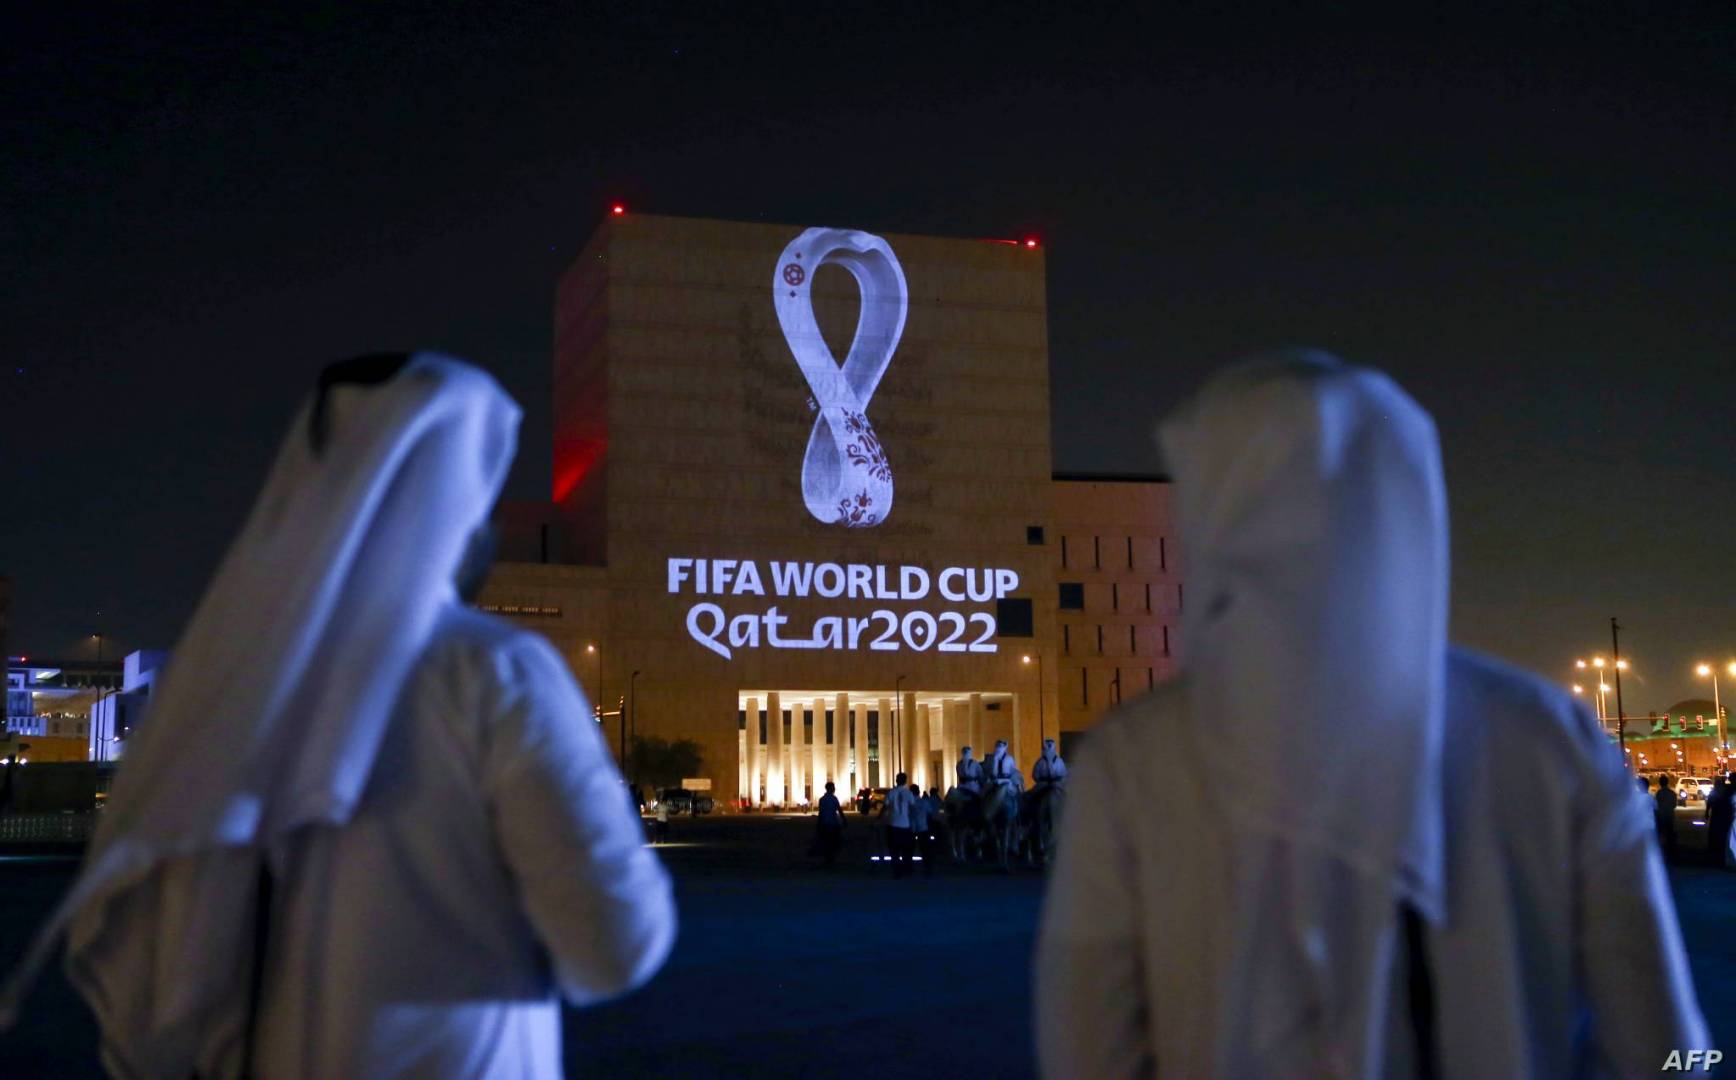 أكثر من 23 مليون طلب لتذاكر مونديال قطر